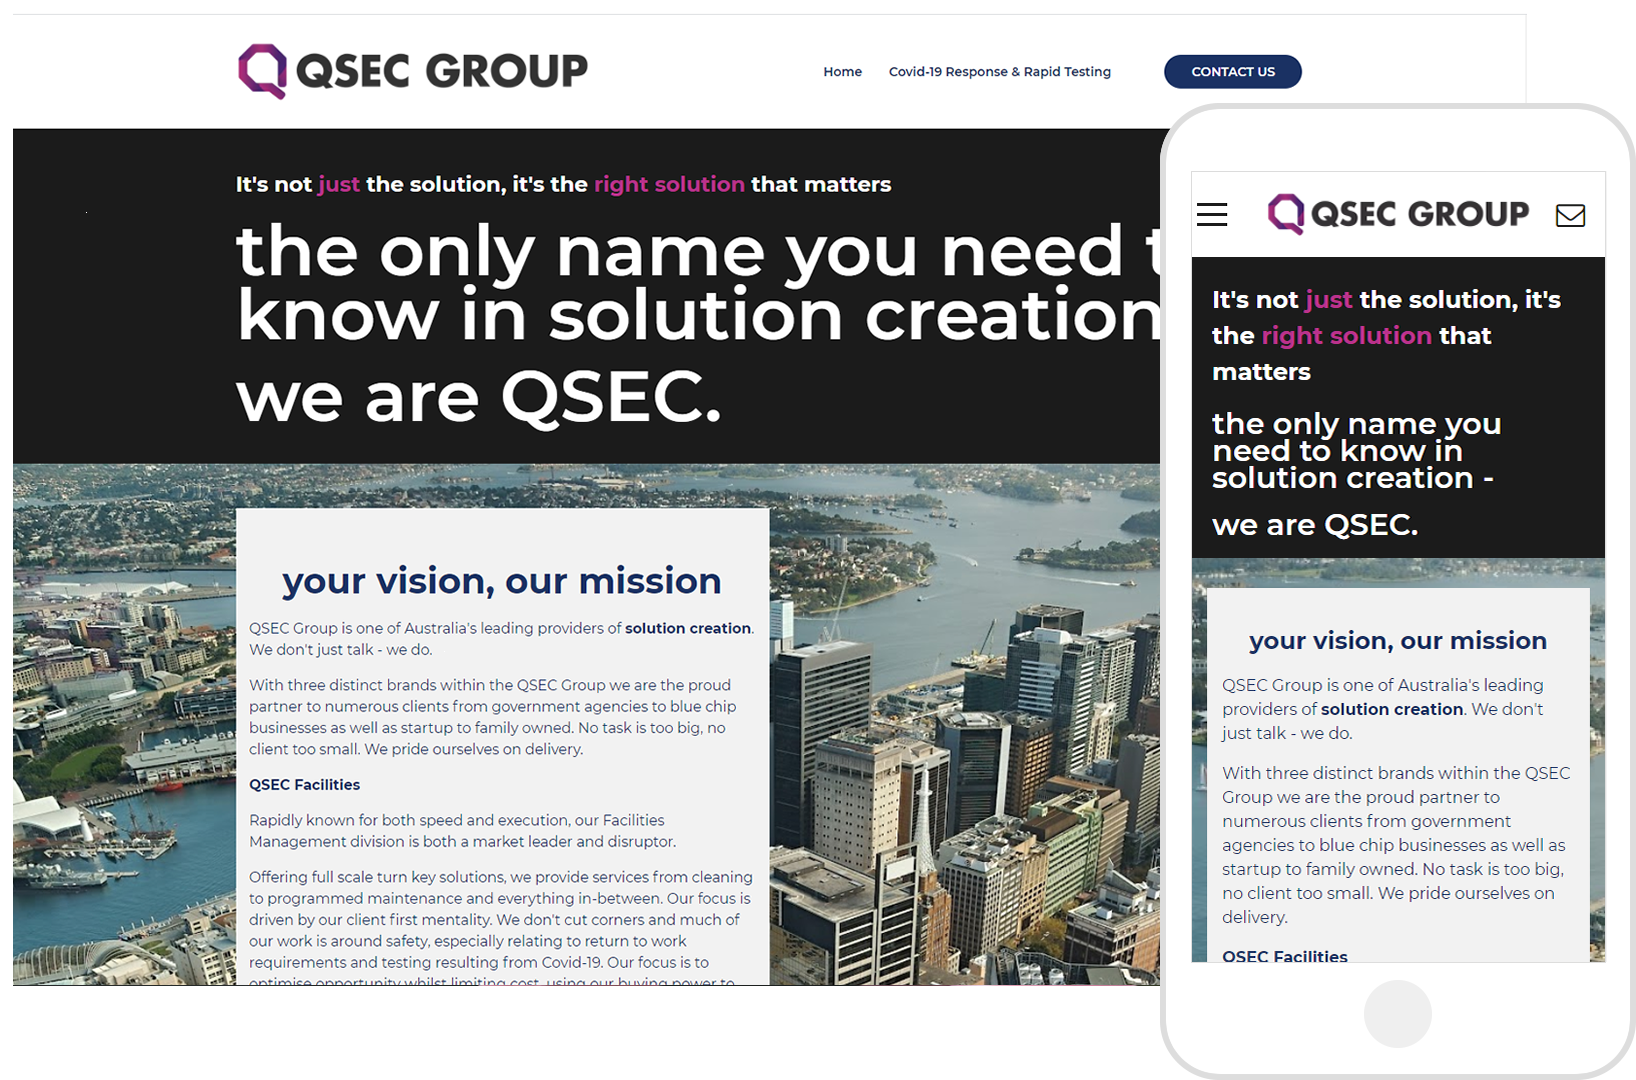 QSEC Group